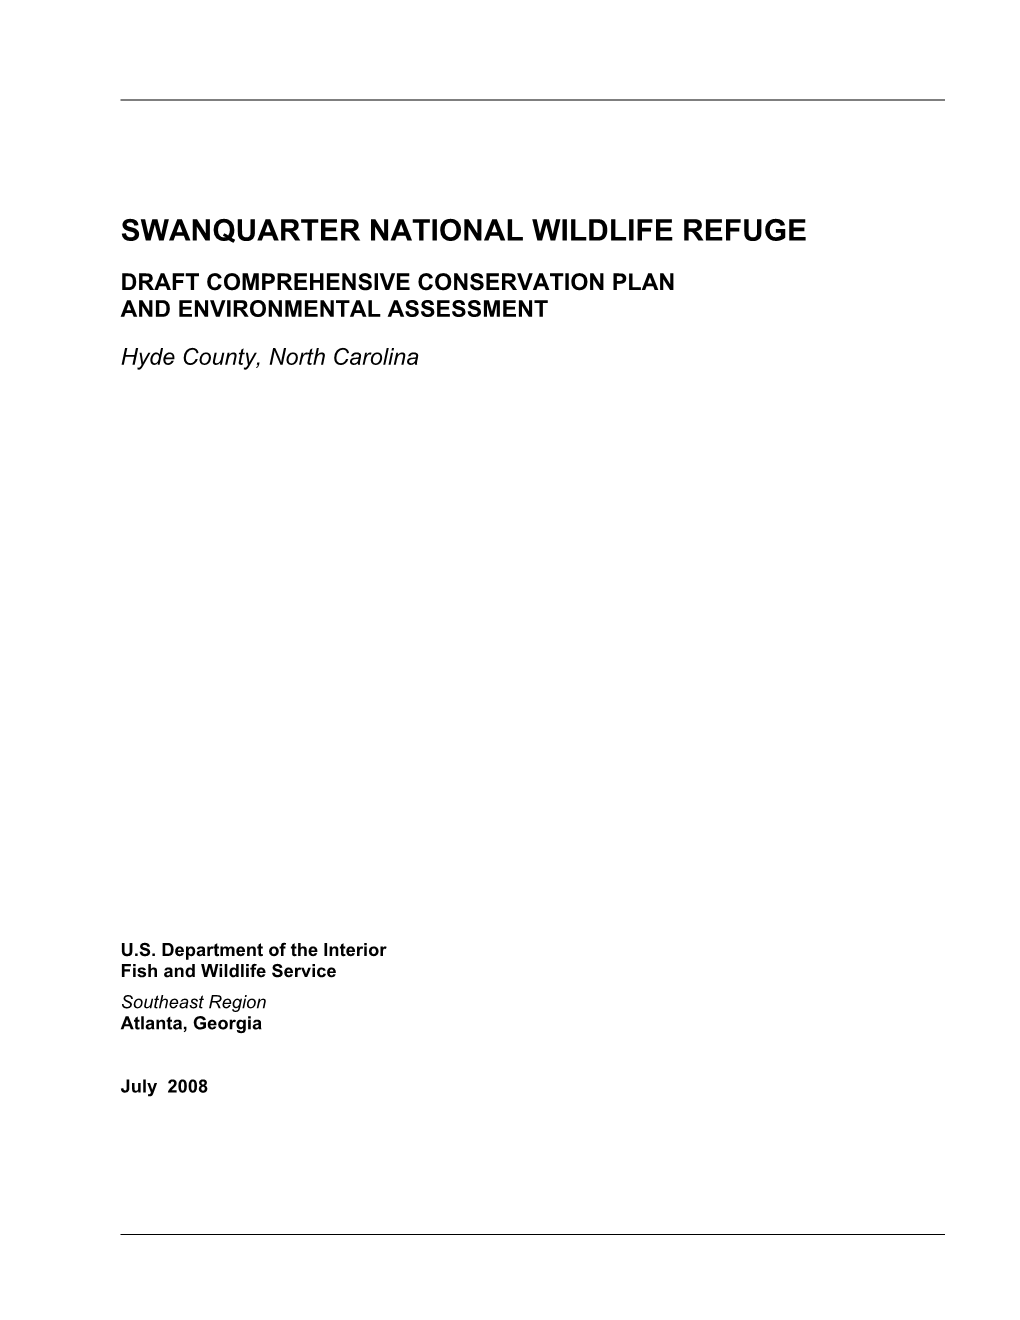 Swanquarter National Wildlife Refuge